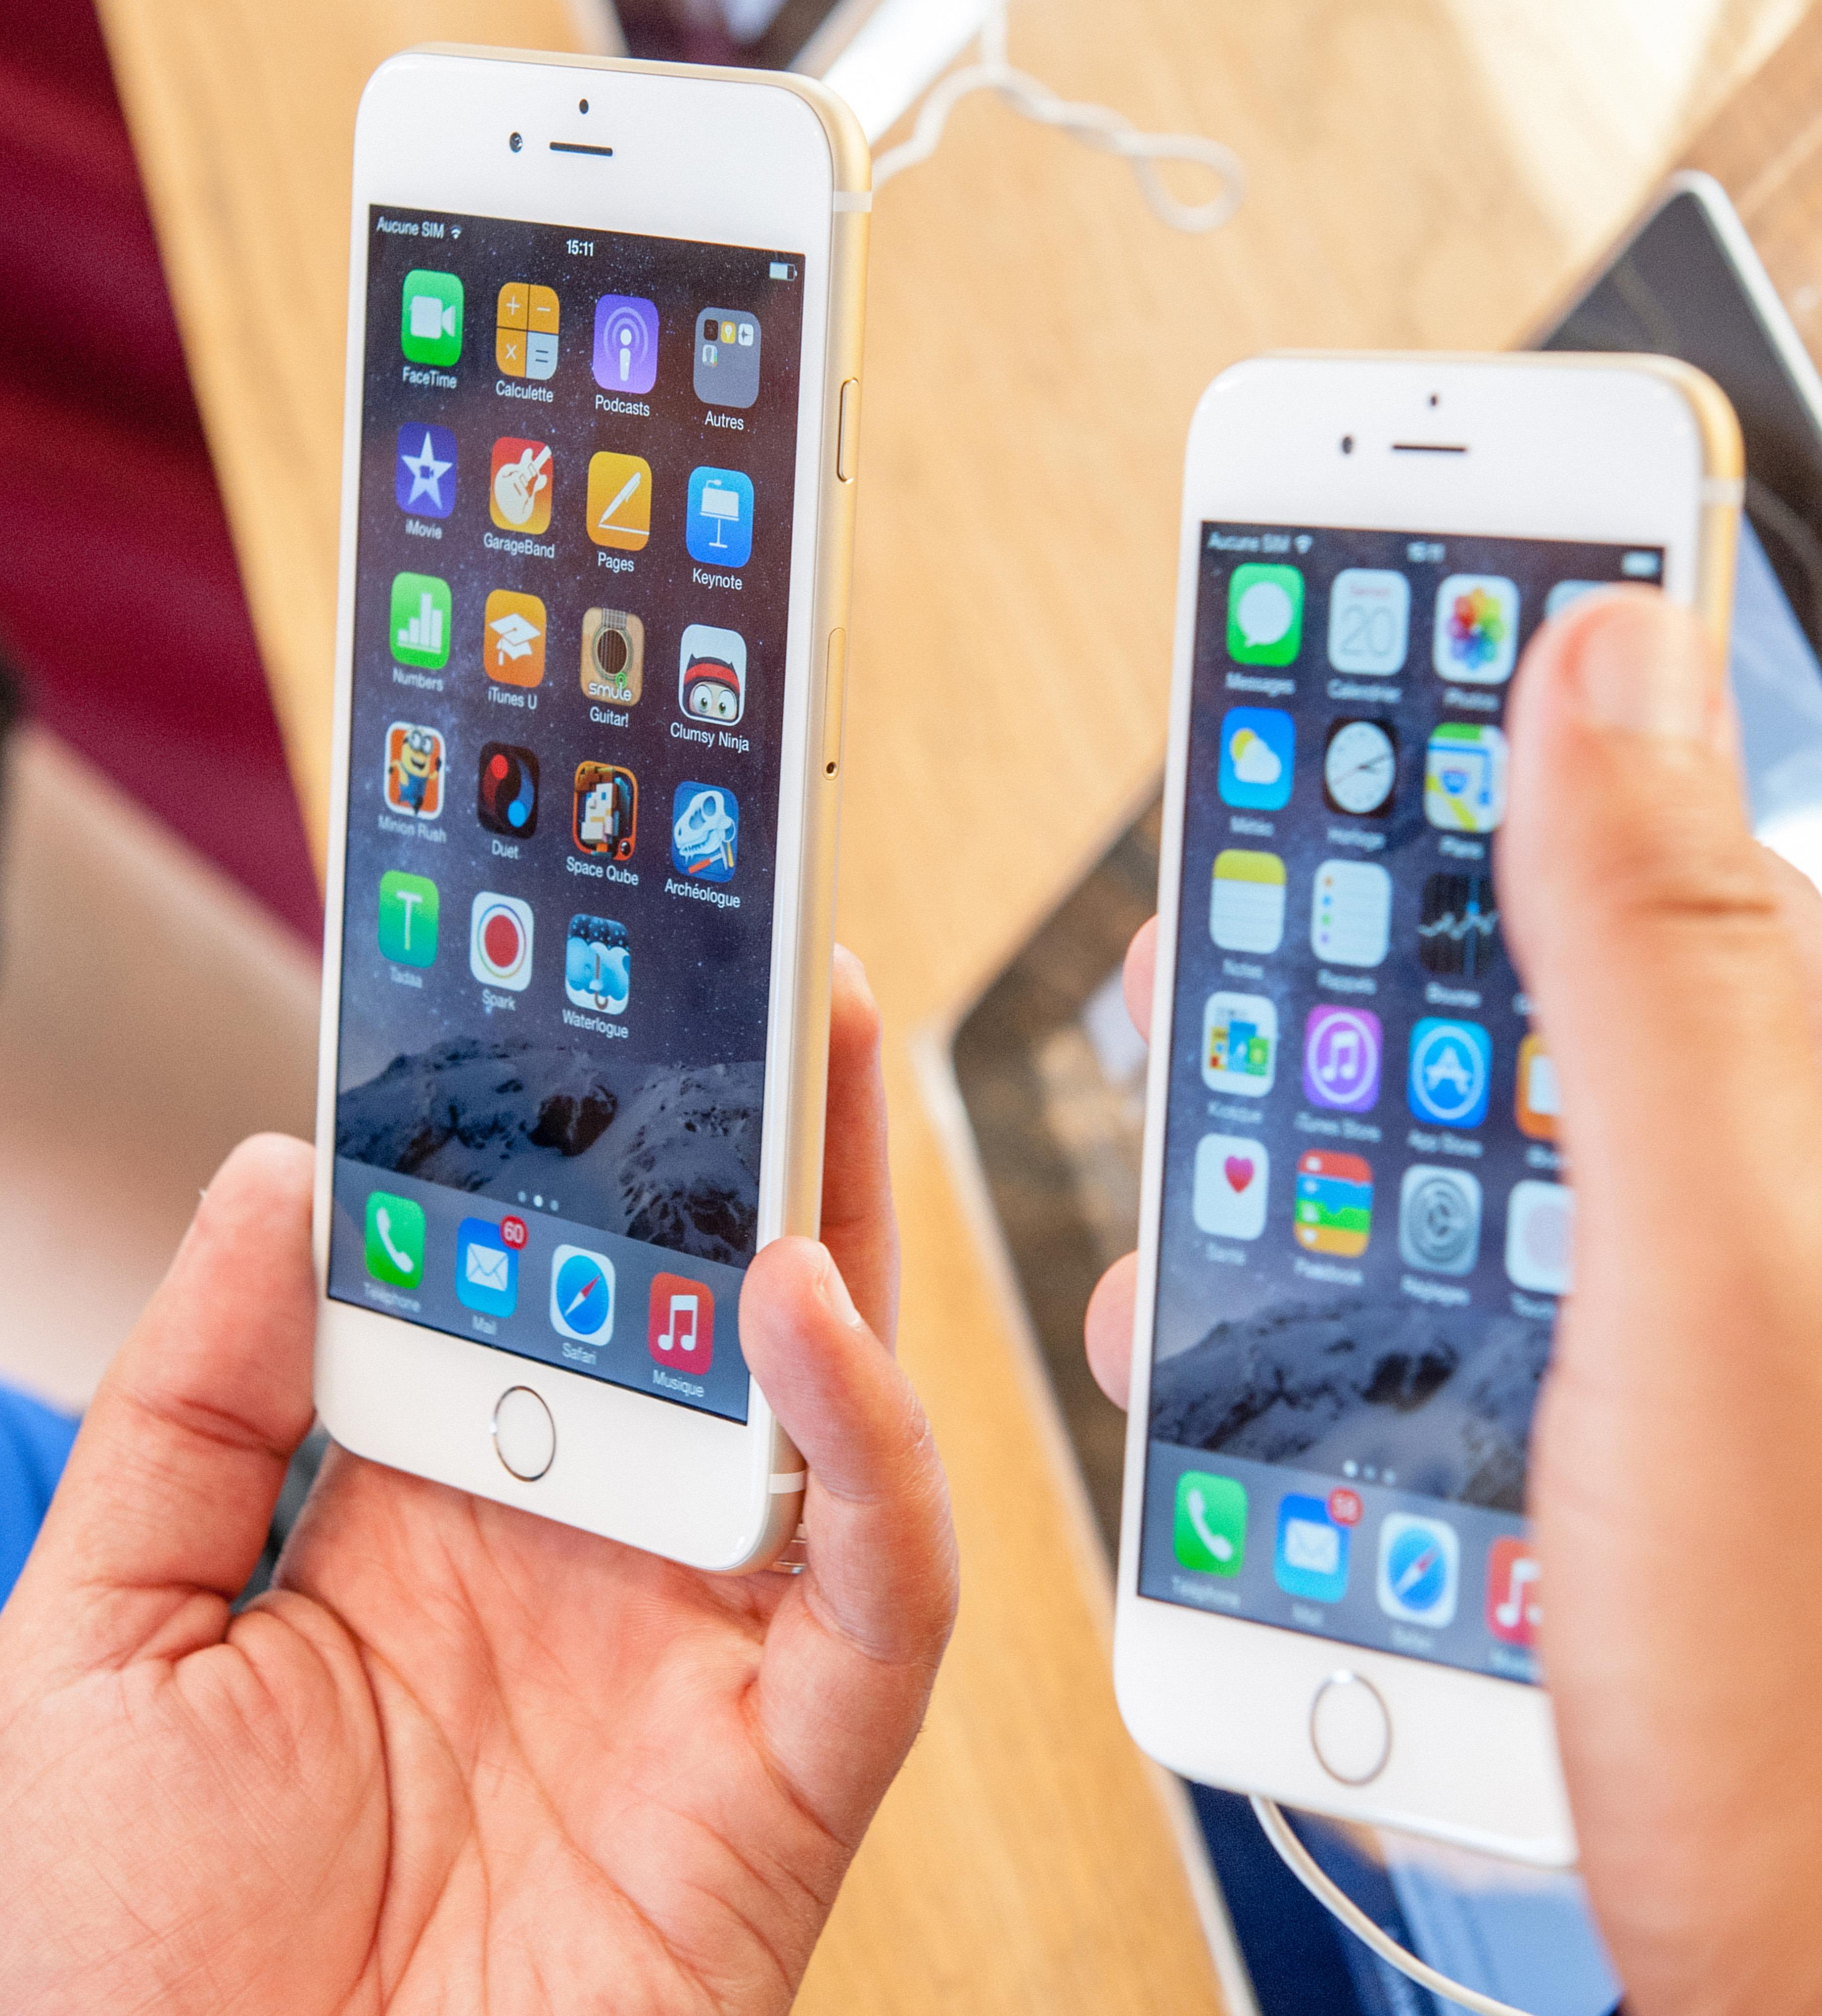 Med overgangen til iOS 8 er kryptering automatisk aktivert for alle iOS-enheter. Har du en eldre enhet bør du aktivere kryptering, eller fylle opp lagringsplassen før du eventuelt gir fra deg telefonen.Foto: Hadrian / Shutterstock.com